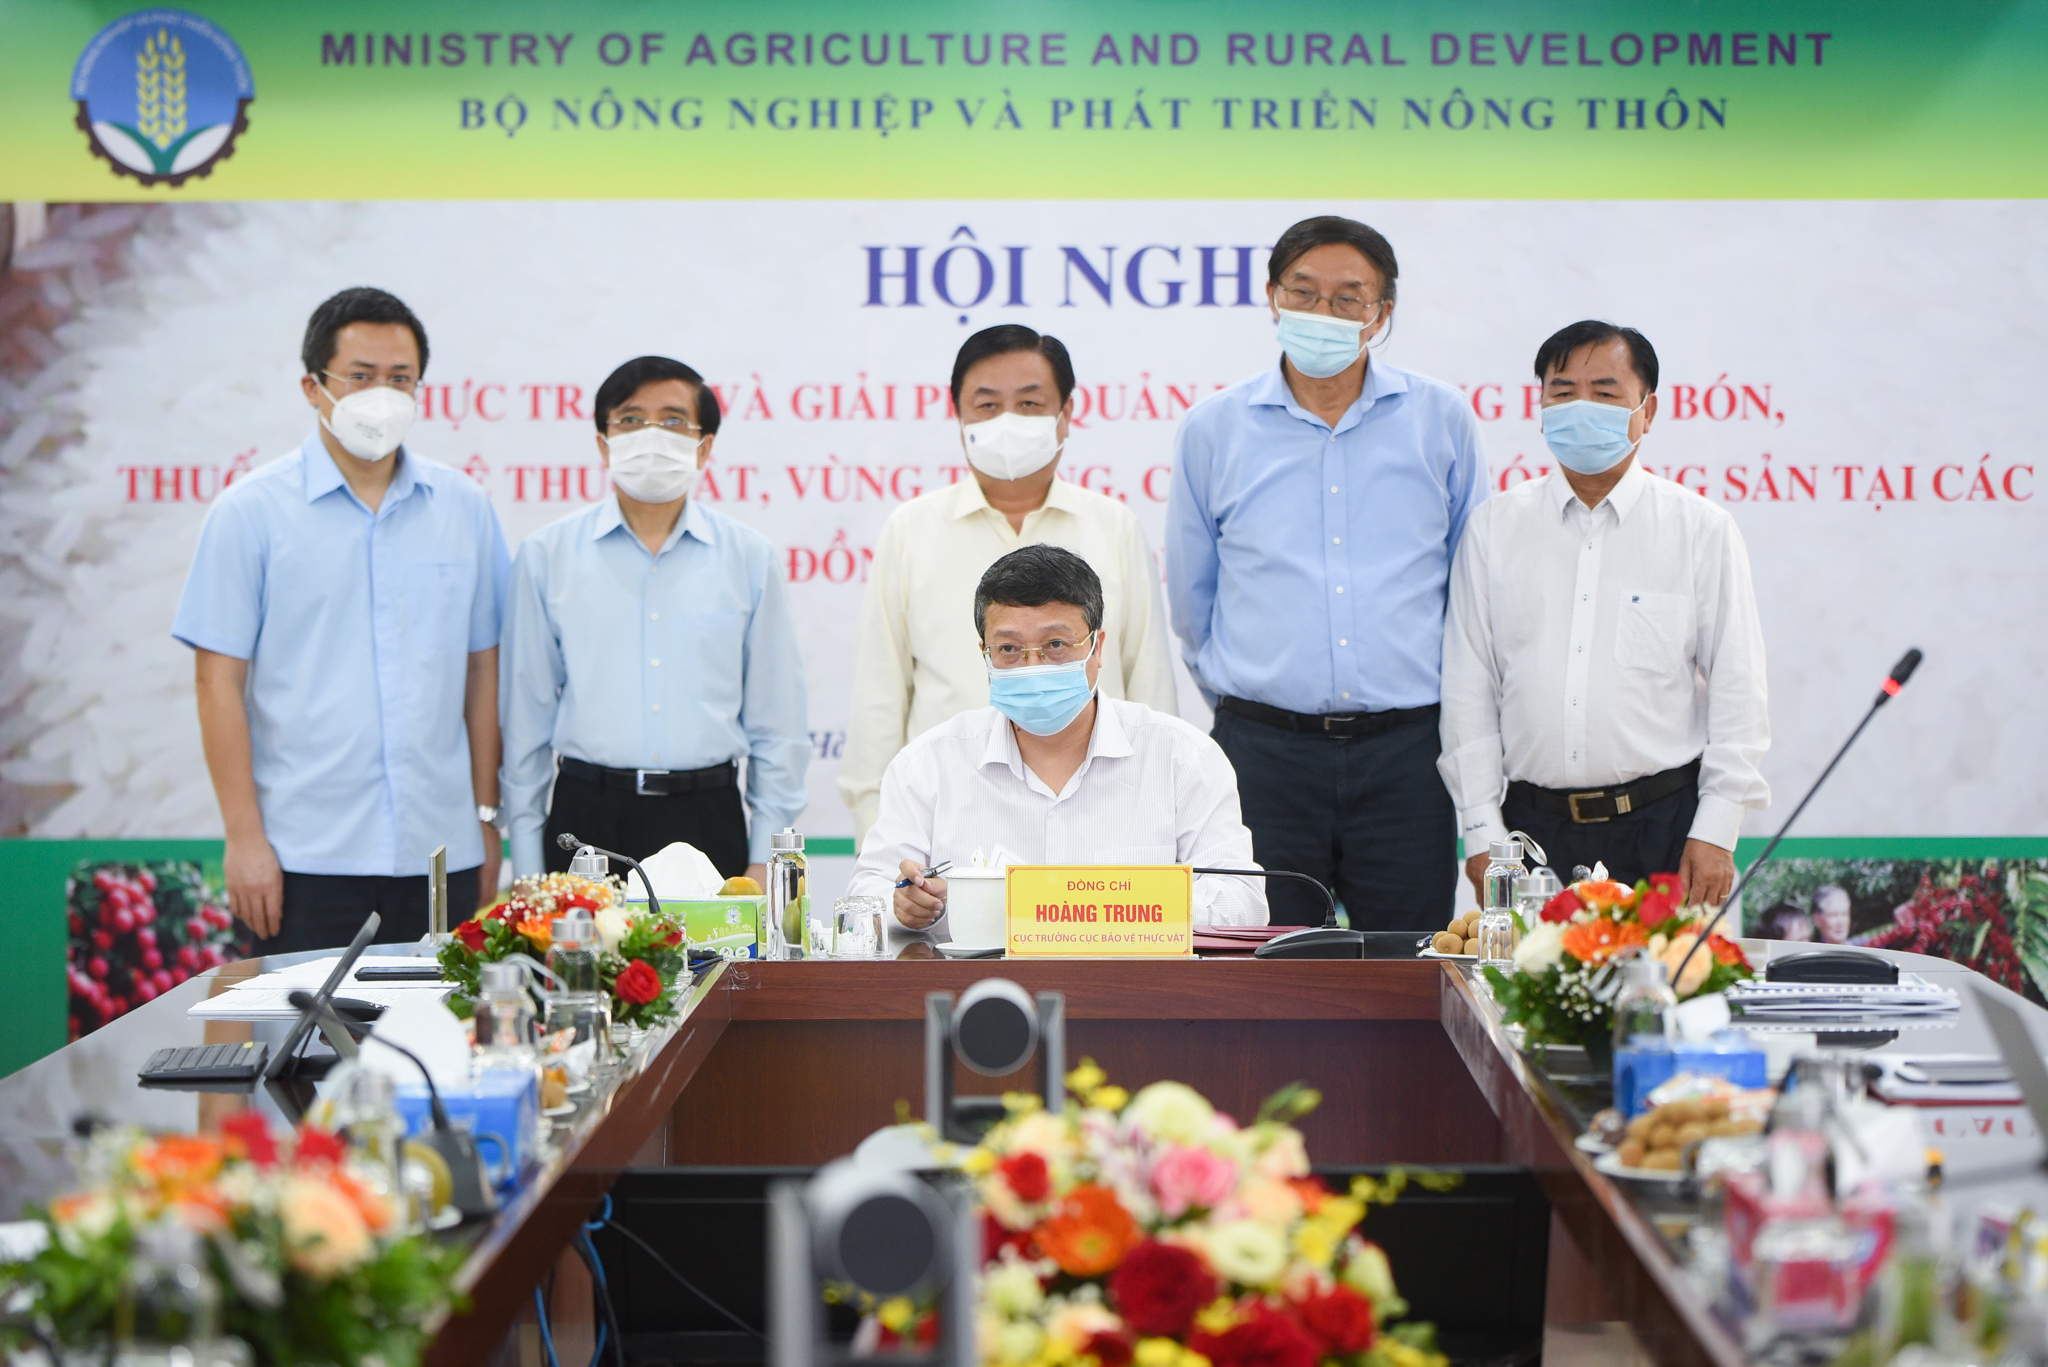 Tại hội nghị, đã tổ chức Lễ ký kết trực tuyến các thỏa thuận về sử dụng phân bón hữu cơ, thuốc BVTV sinh học và quản lỳ vùng trồng giữa Cục BVTV và các công ty, đơn vị. Ảnh: Tùng Đinh.